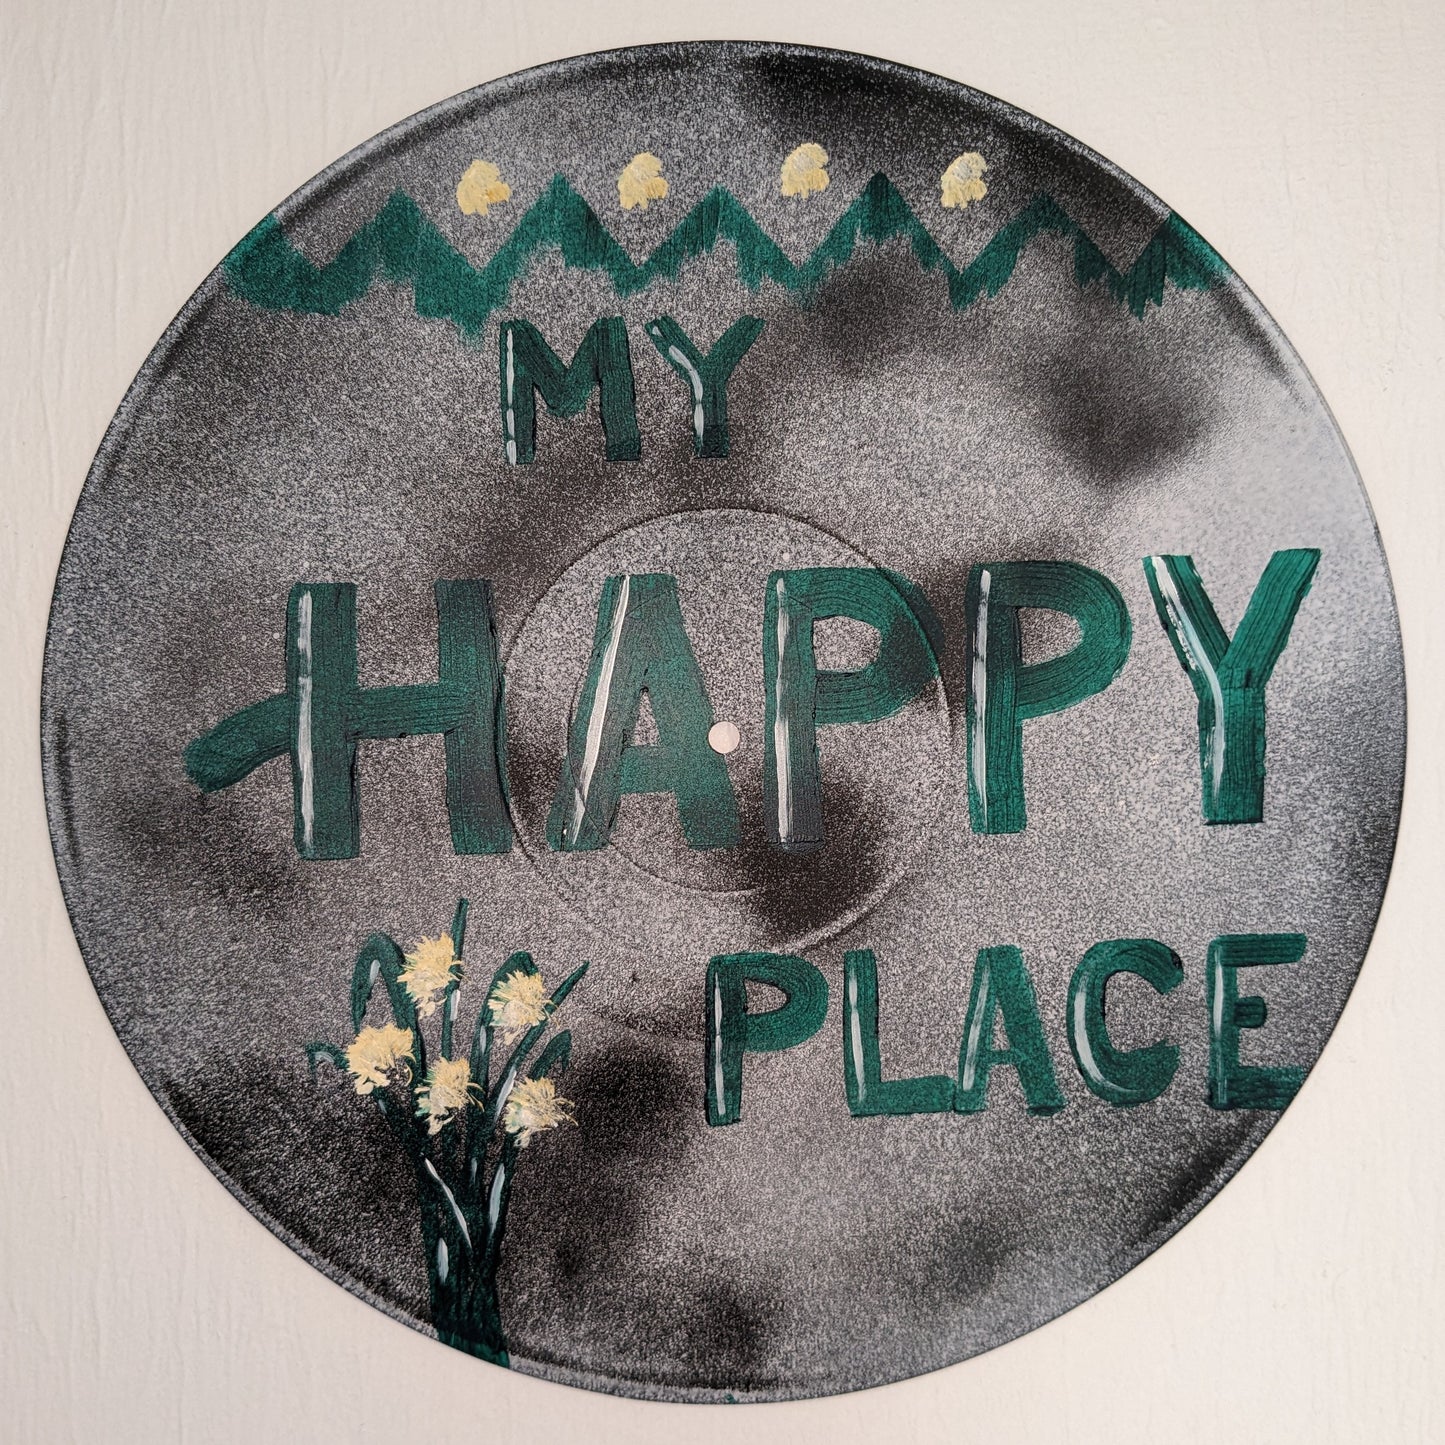 Arte discográfico 'My Happy Place'